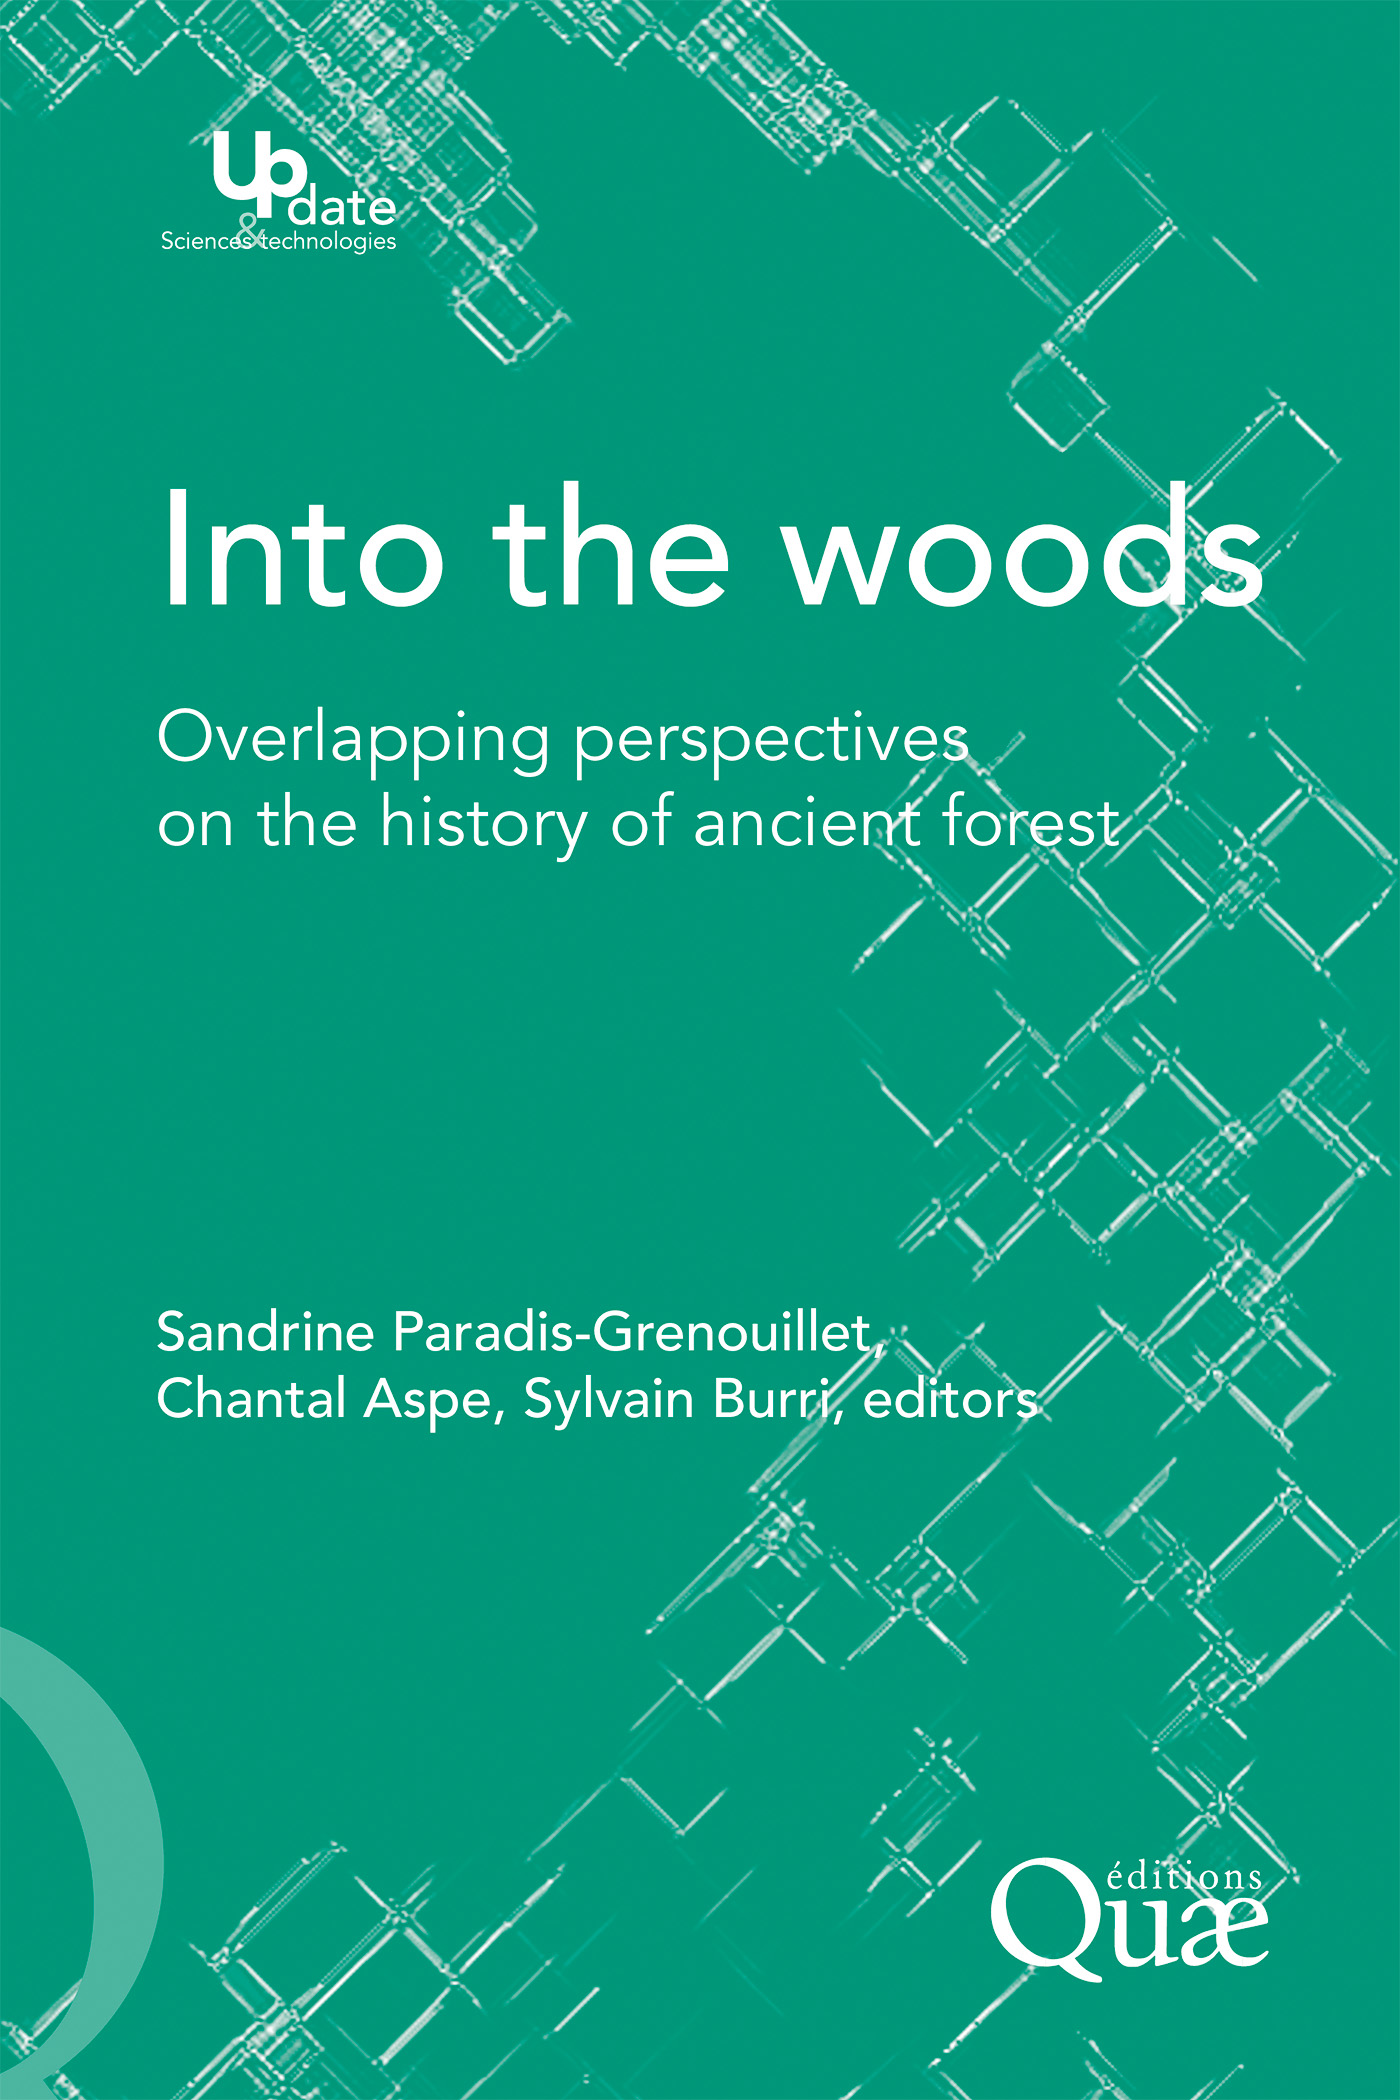 Into the woods De Sandrine Paradis-Grenouillet, Chantal Aspe et Sylvain Burri - Quæ